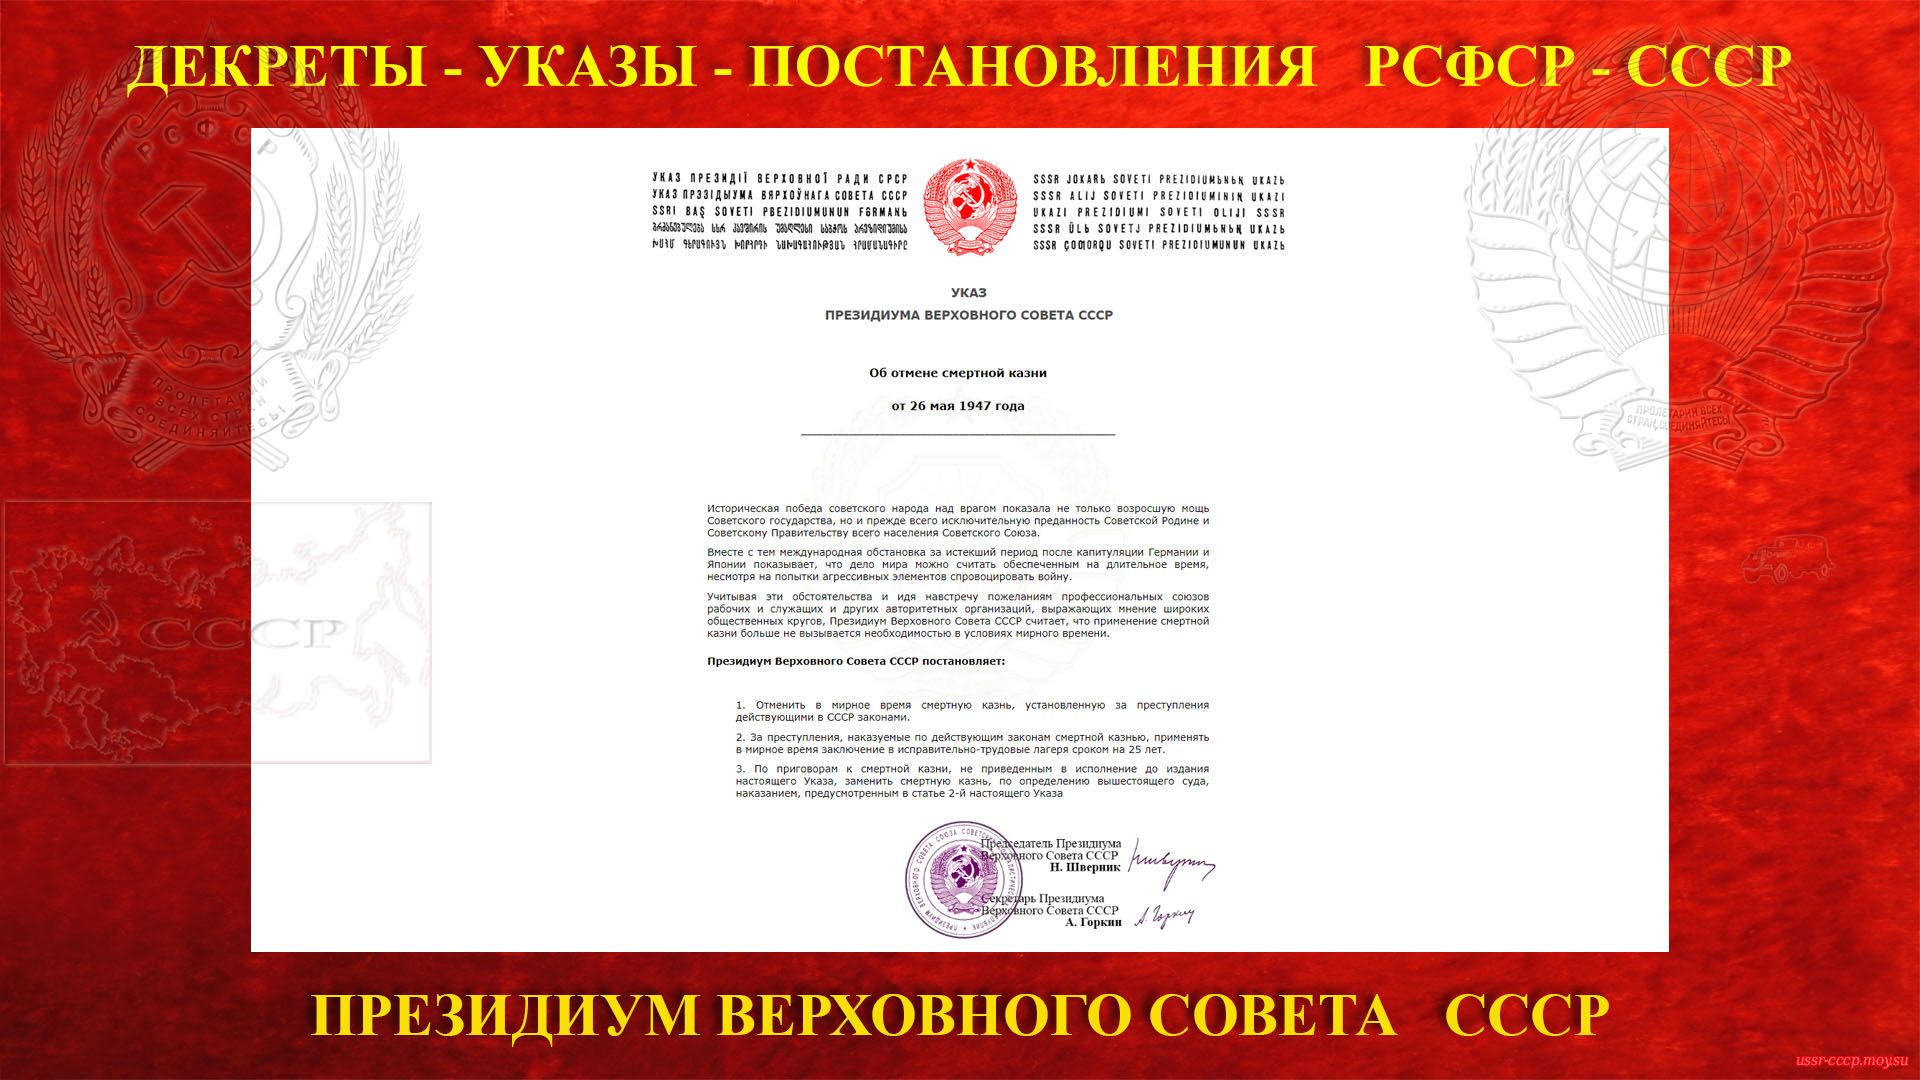 Об отмене смертной казни — Указ Президиум Верховного Совета СССР (26.05.1947) (повествование)